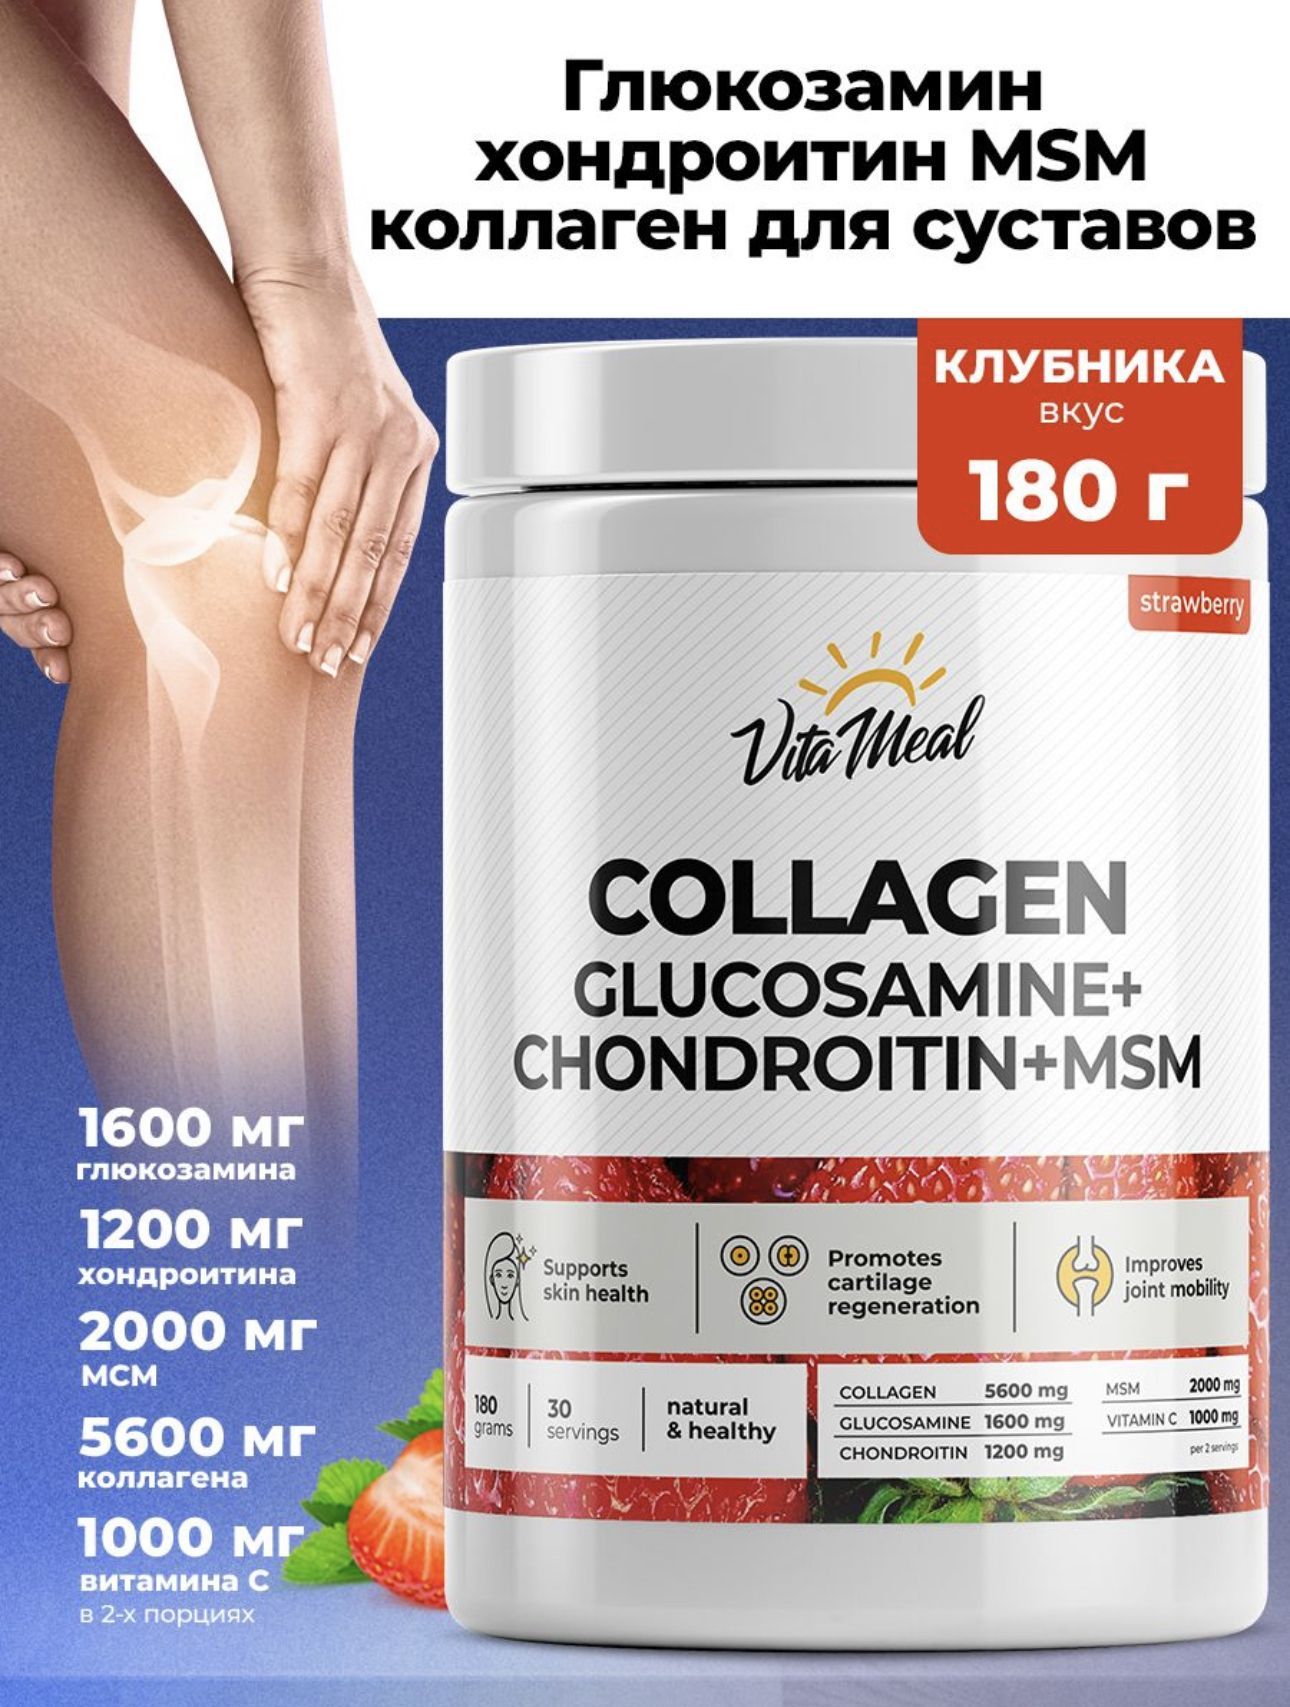 Коллаген+Глюкозамин+Хондроитин+МСМ,Collagen+GHM,COLLAGENGlucosamineChondroitinMSM,Коллагенпорошок,VitaMeal,180г,Клубника